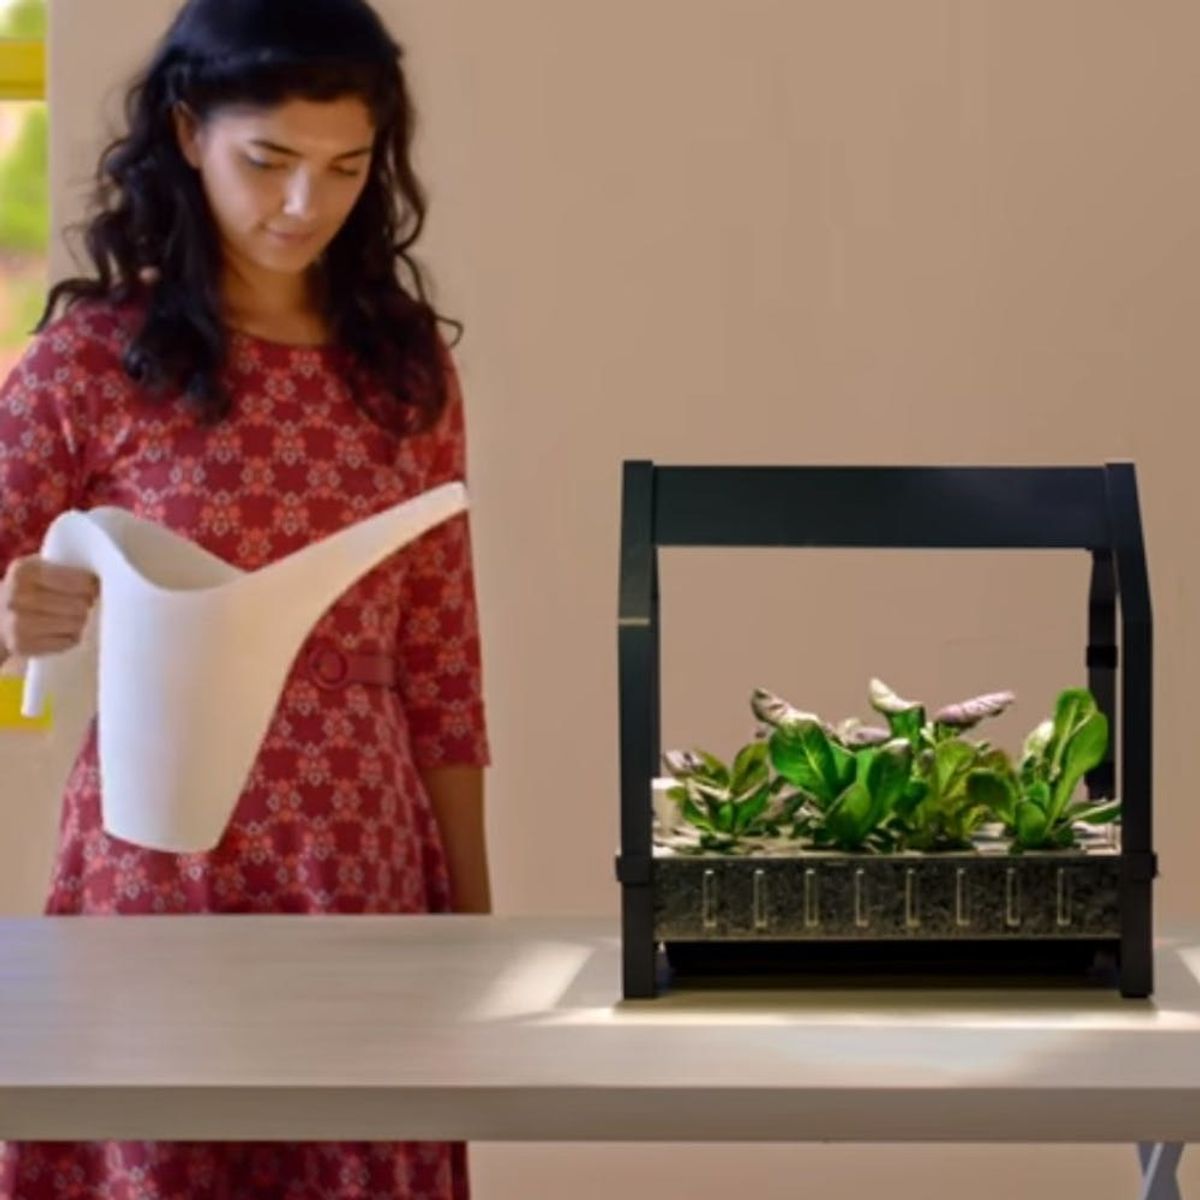 IKEA Is Introducing Countertop Hydroponic Planters for Indoor DIY Gardening